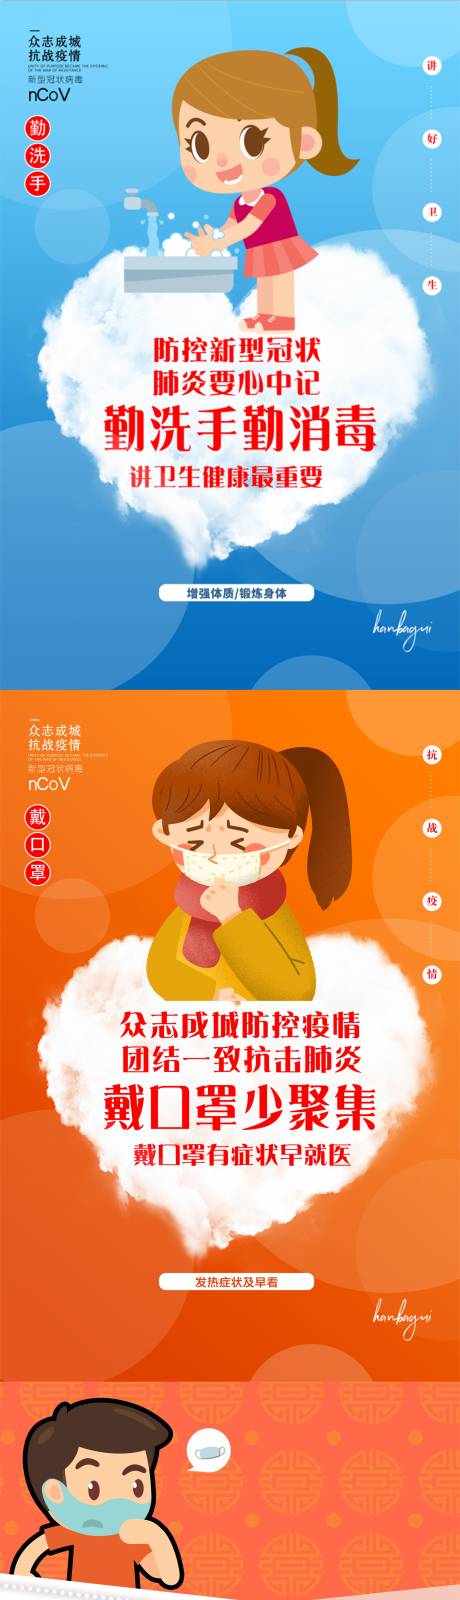 武汉加油肺炎病毒抗击疫情系列海报